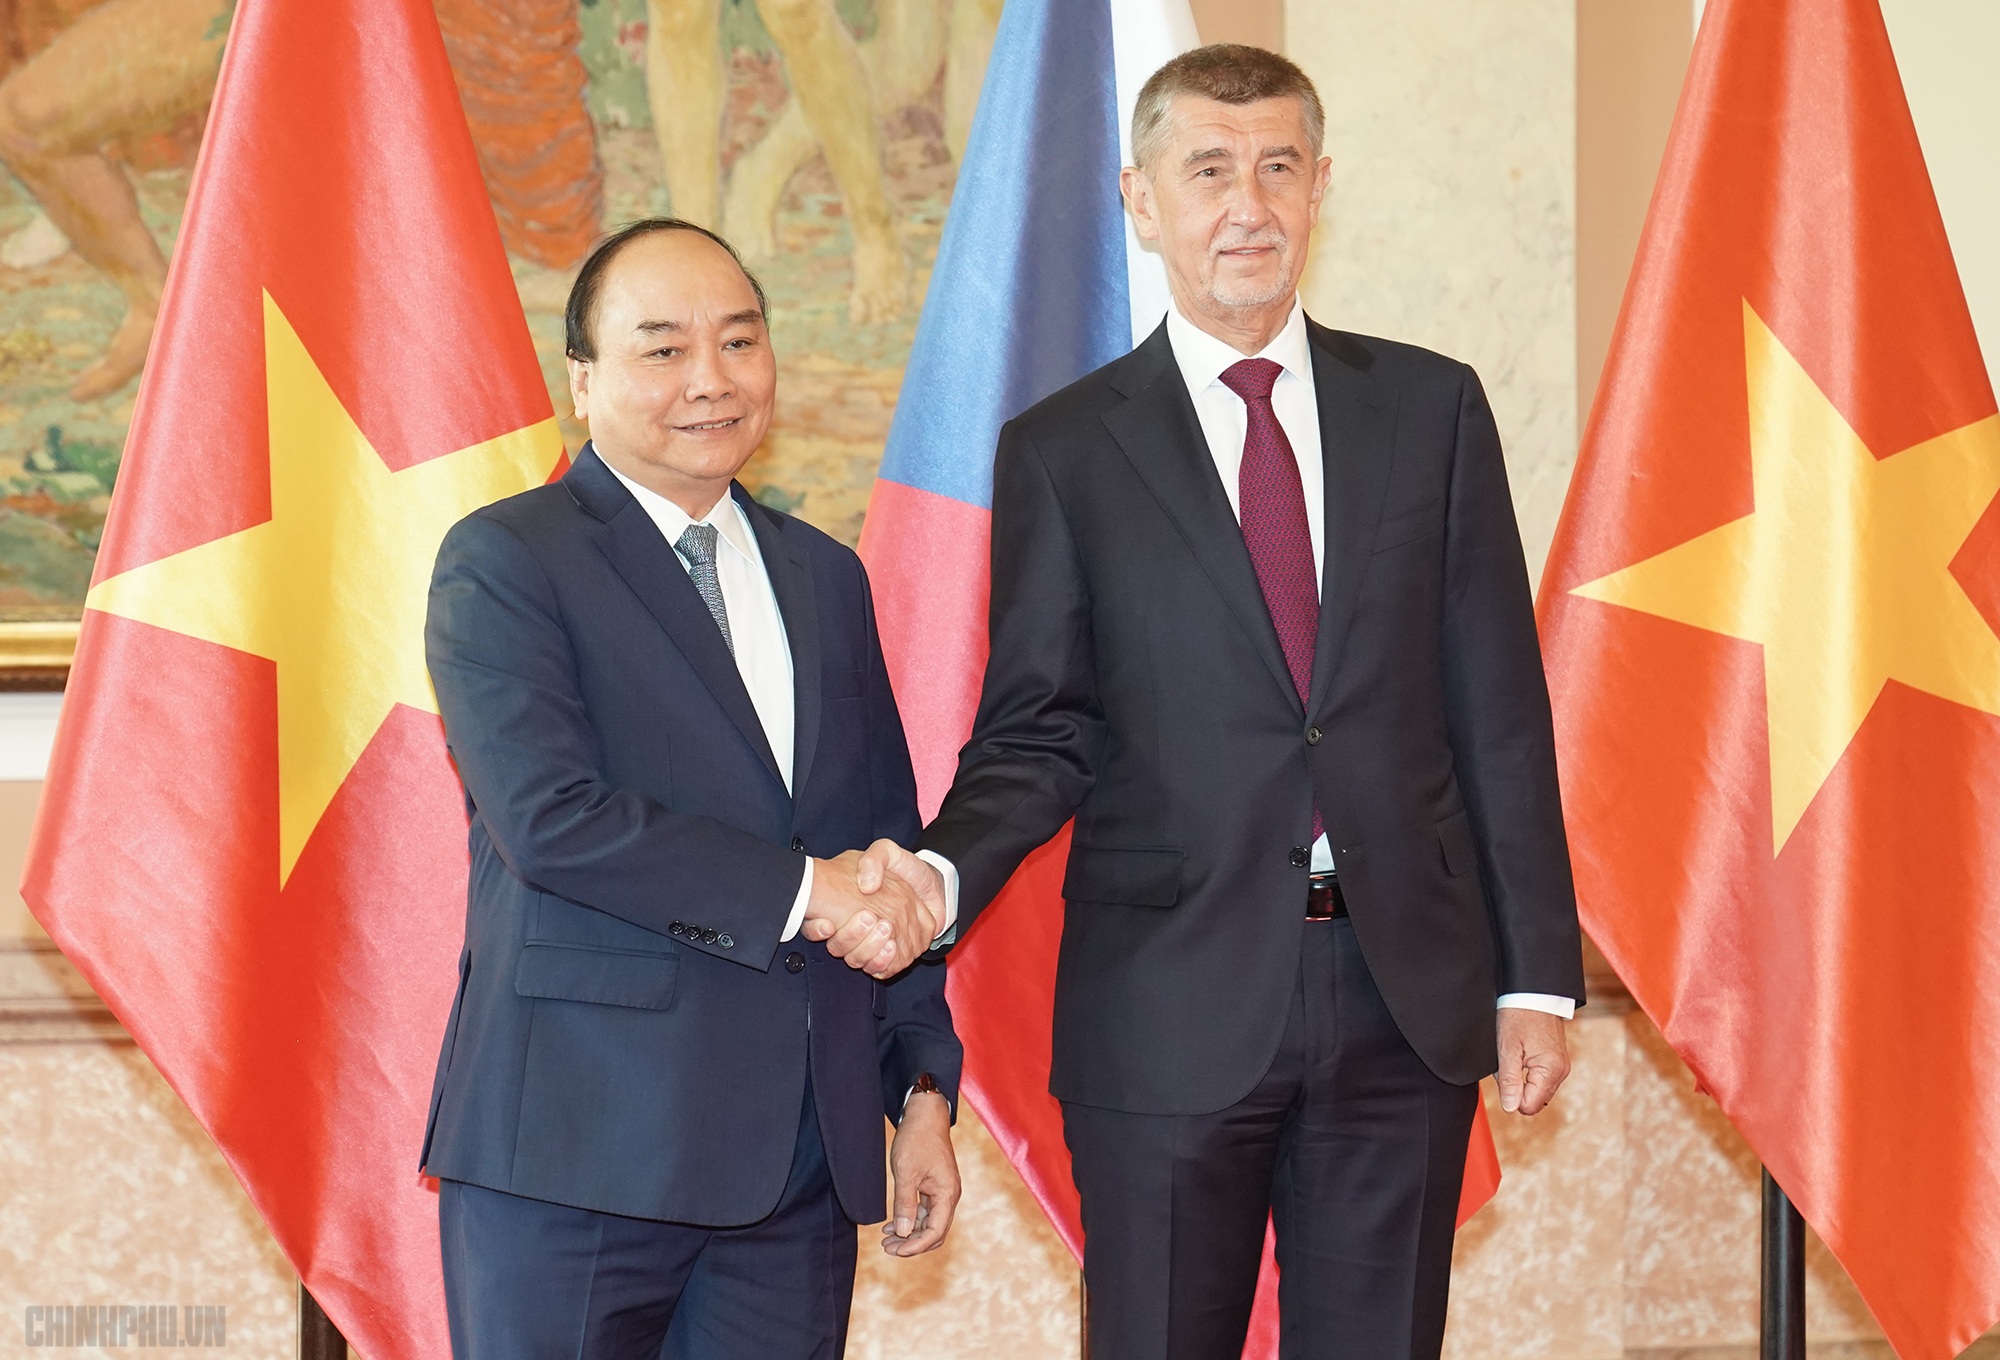 Thủ tướng Nguyễn Xuân Phúc thăm Cộng hòa Séc là dấu mốc quan trọng